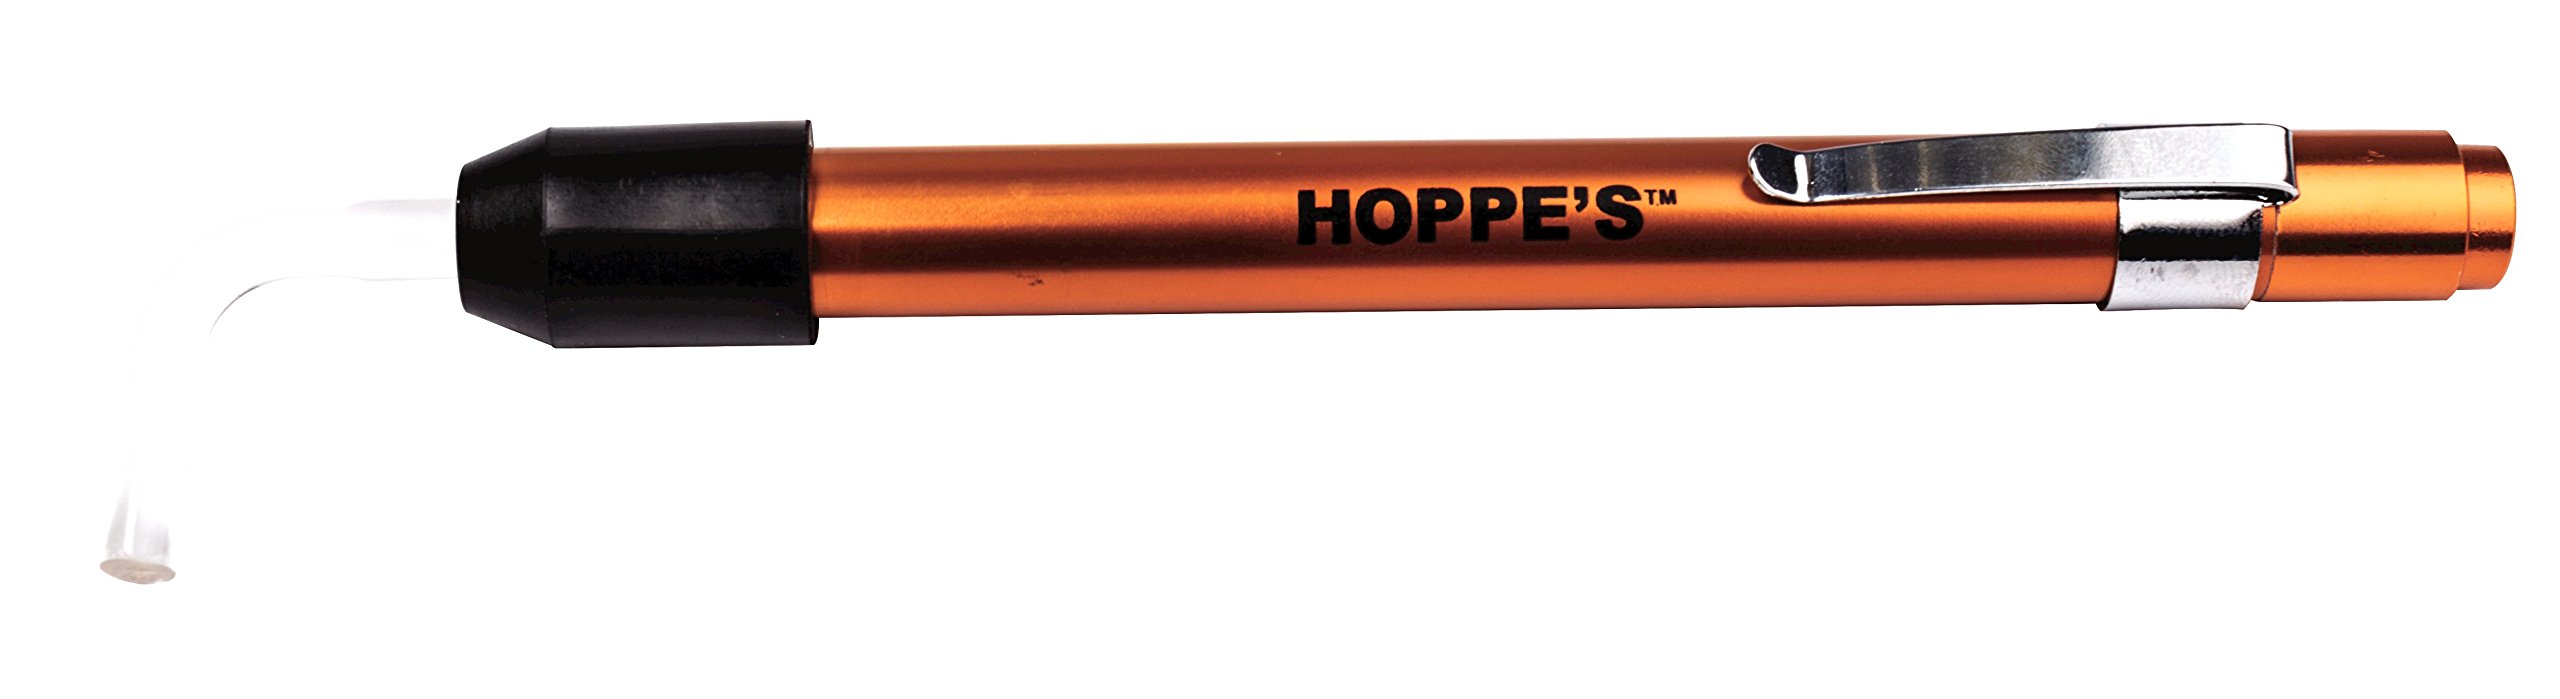 Hoppe's No. 9 Bore Light